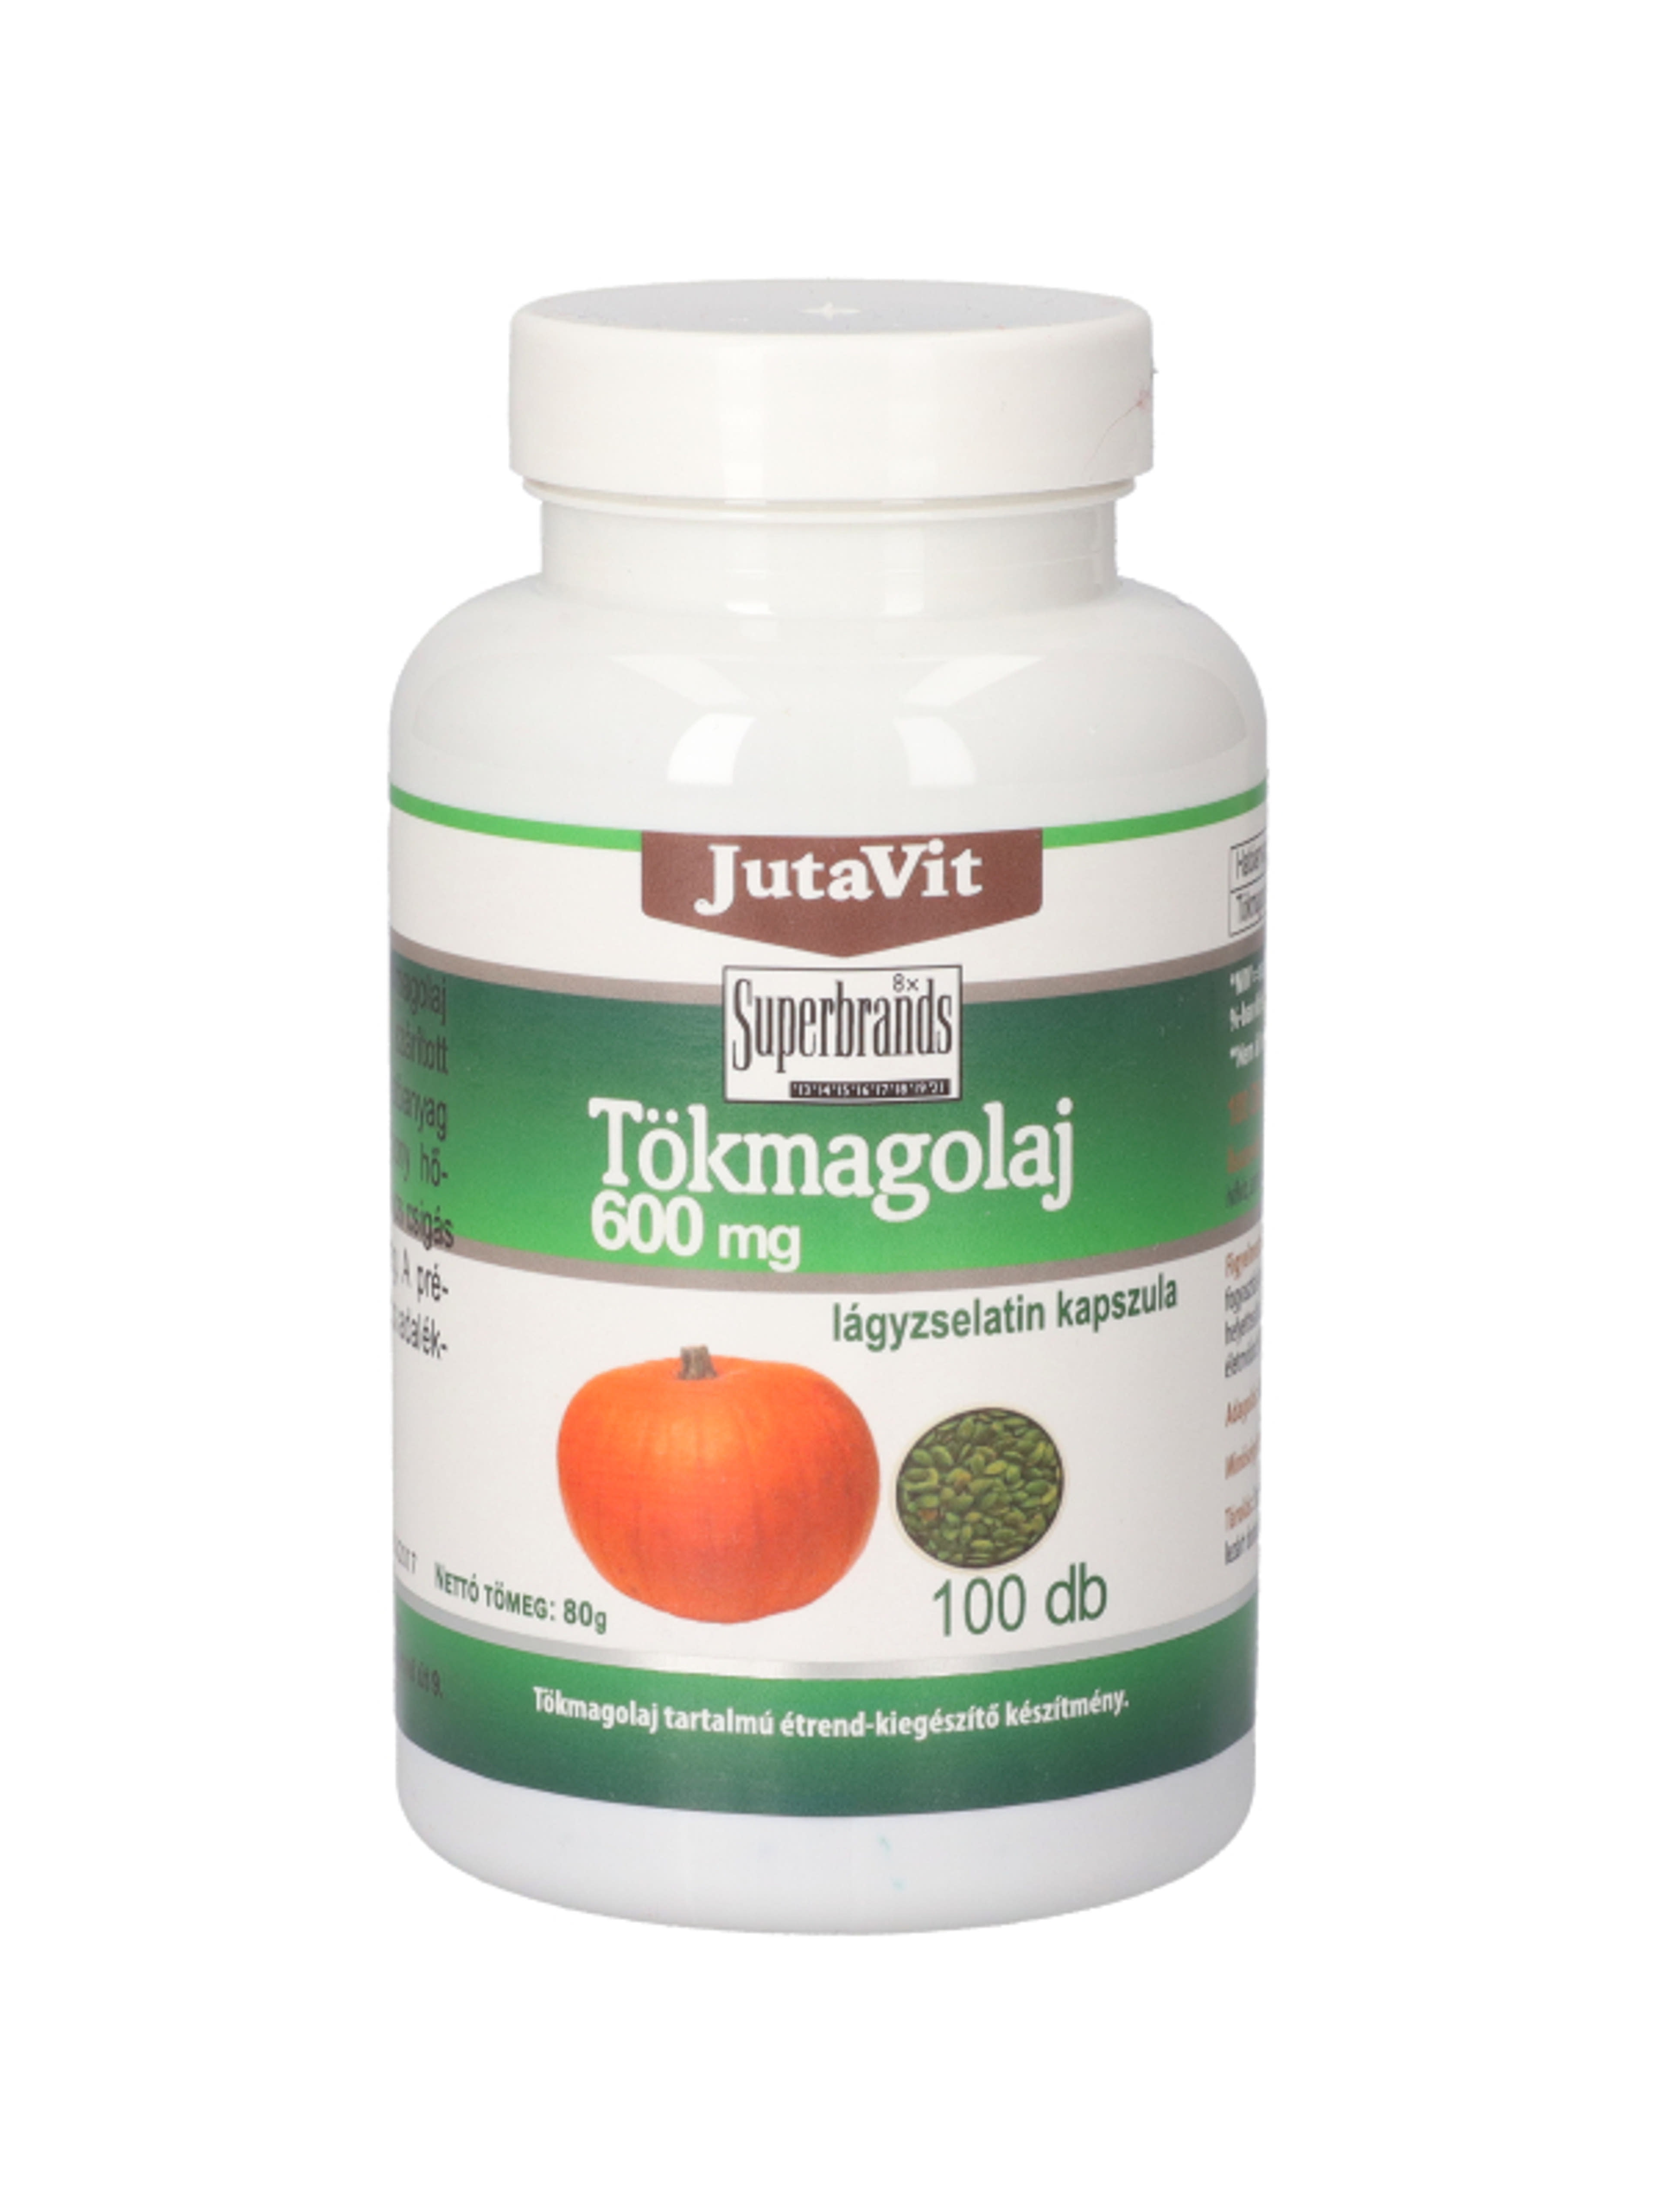 JutaVit tökmagolaj étrend-kiegészítő lágyzselatin kapszula, 600 mg - 100 db-1